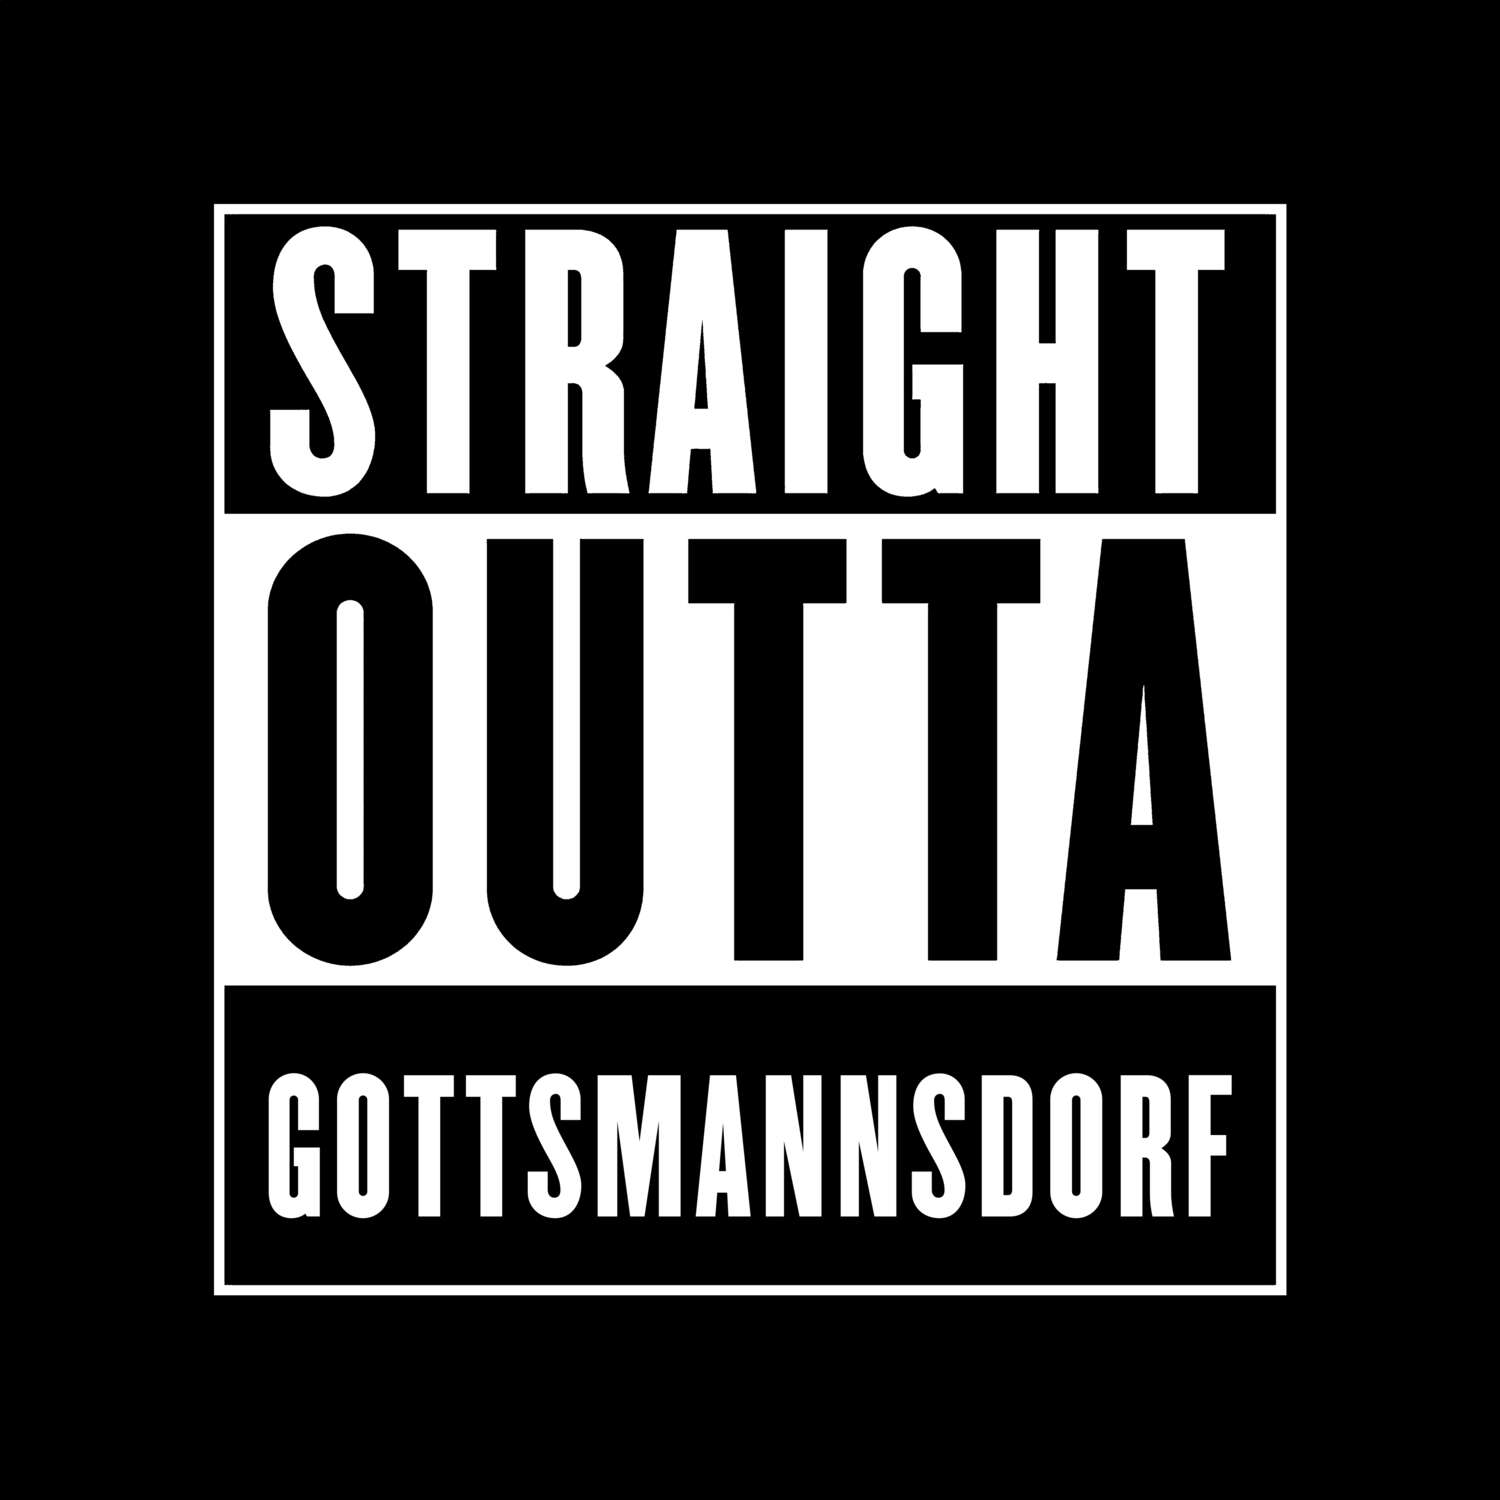 Gottsmannsdorf T-Shirt »Straight Outta«